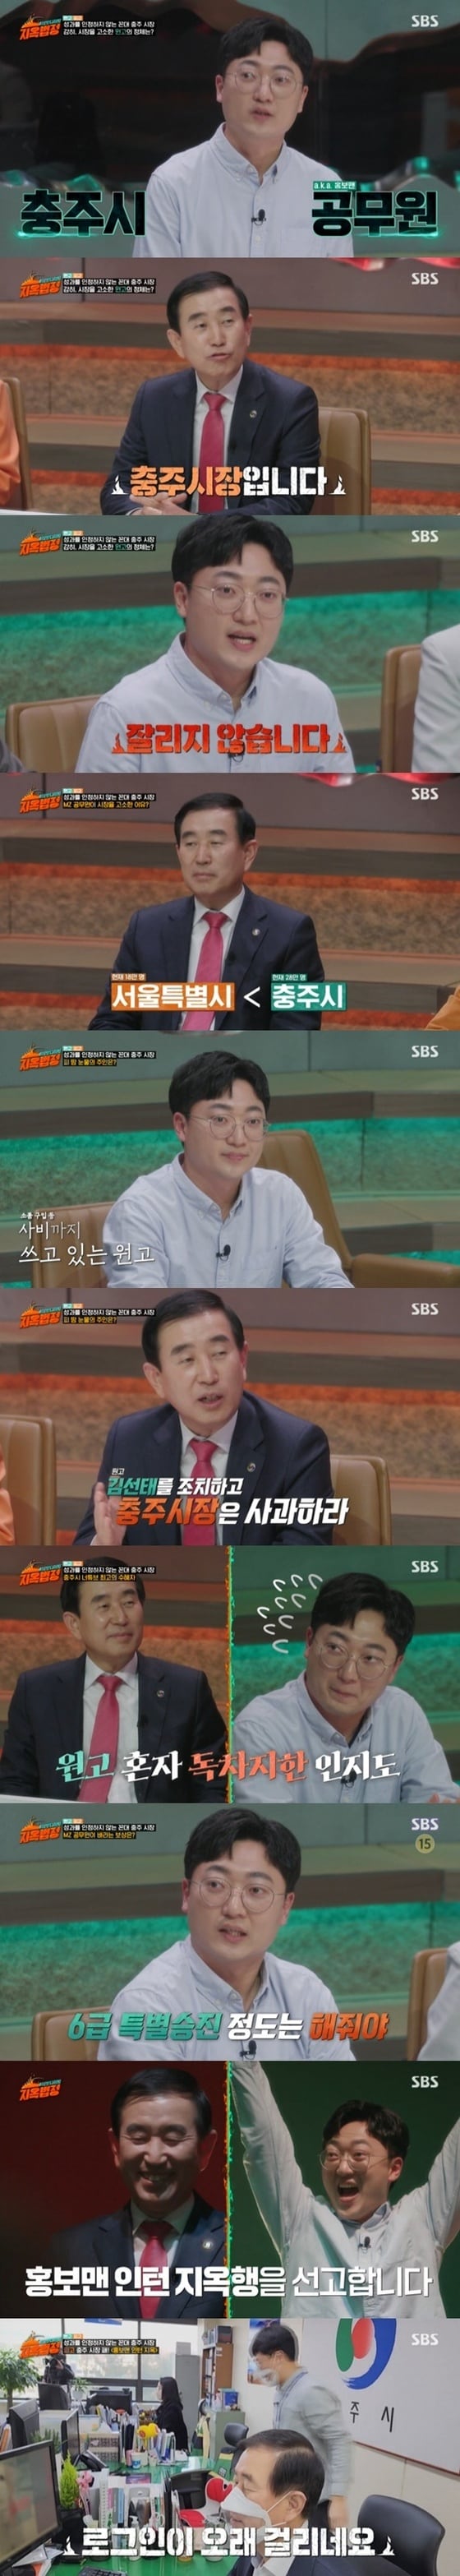 SBS '이상한 나라의 지옥법정' 캡처